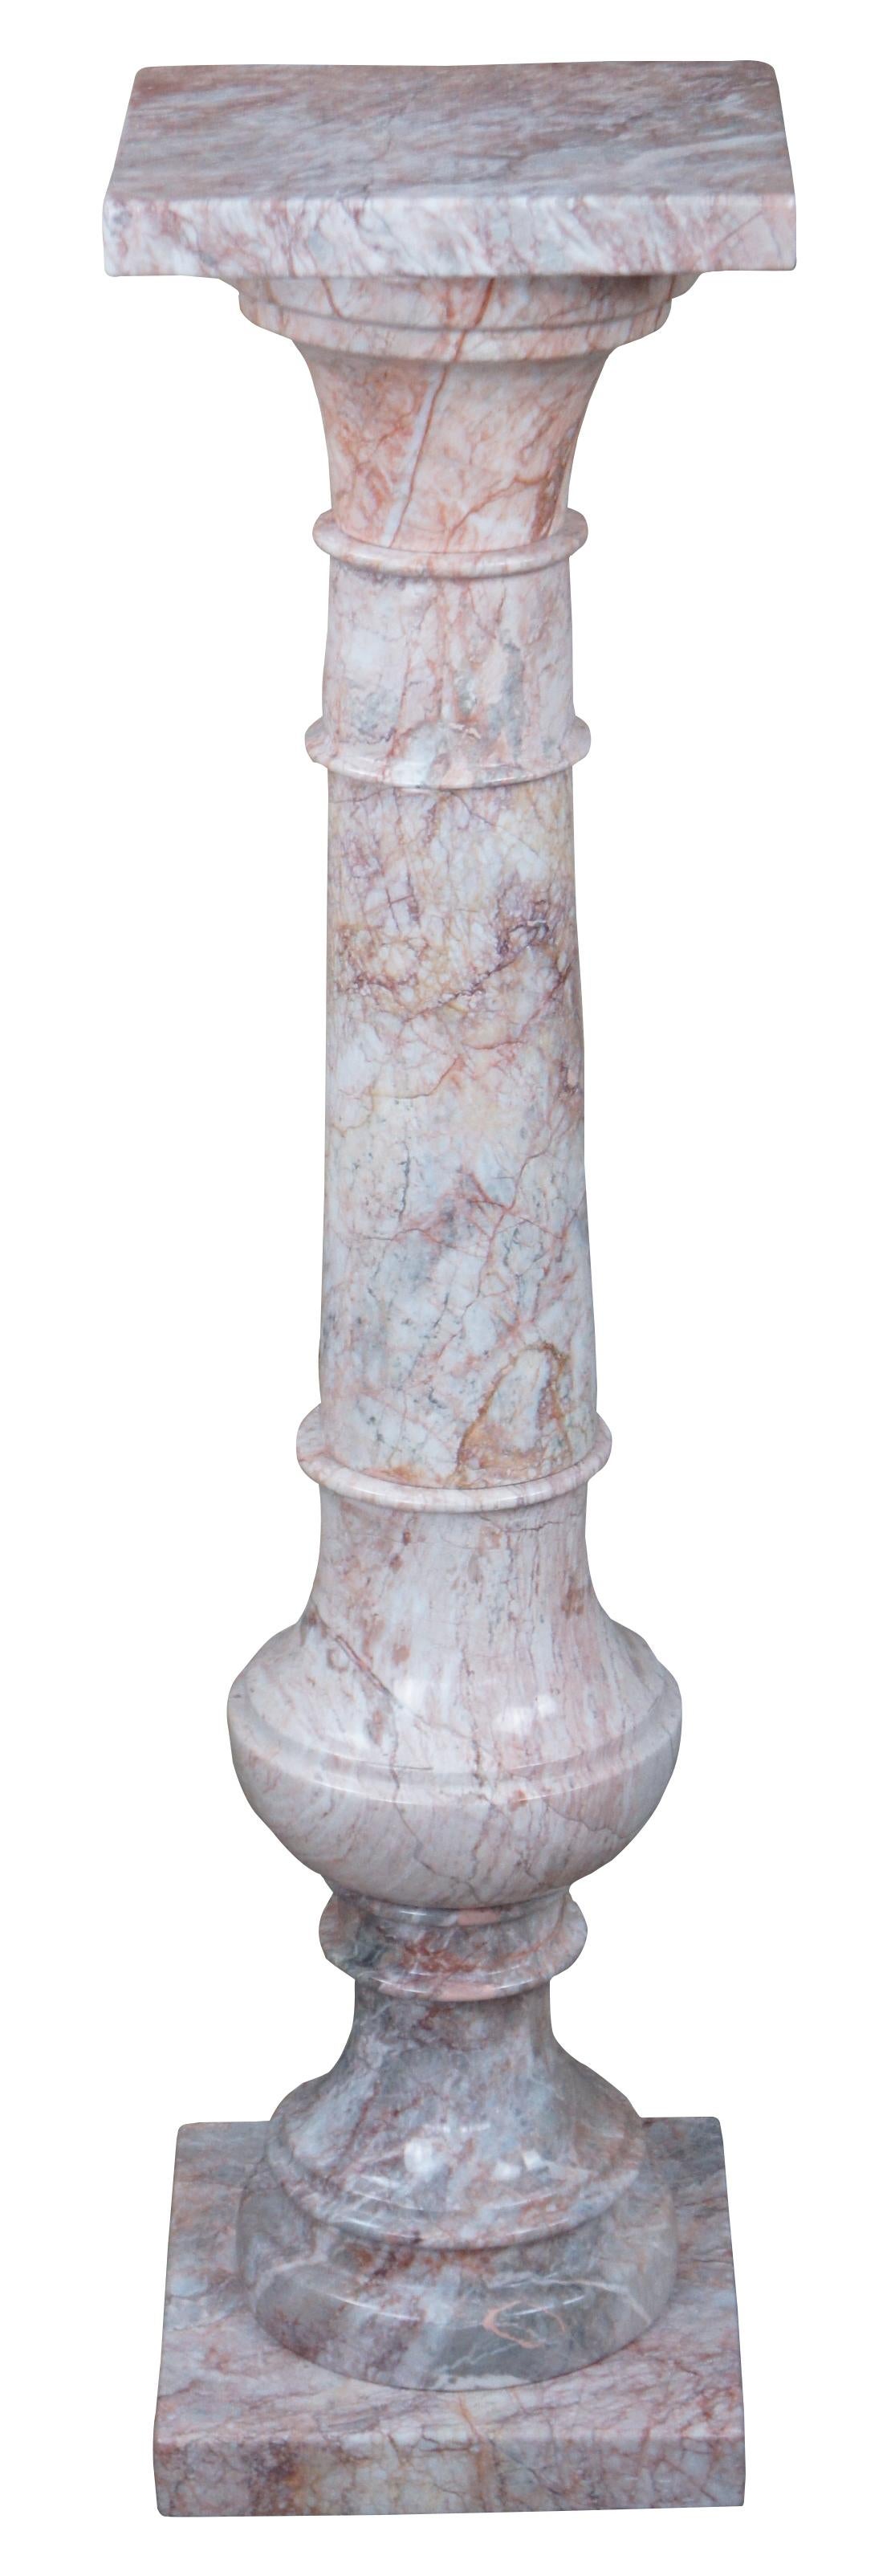 Paire de colonnes en marbre rose de style néo-classique italien du XXe siècle. Une forme élégante de trophée ou de balustre avec une couleur exceptionnelle. Fabriqué au Mexique.

Marbre Rouge Royal

La carrière de marbre Red Royal est située à